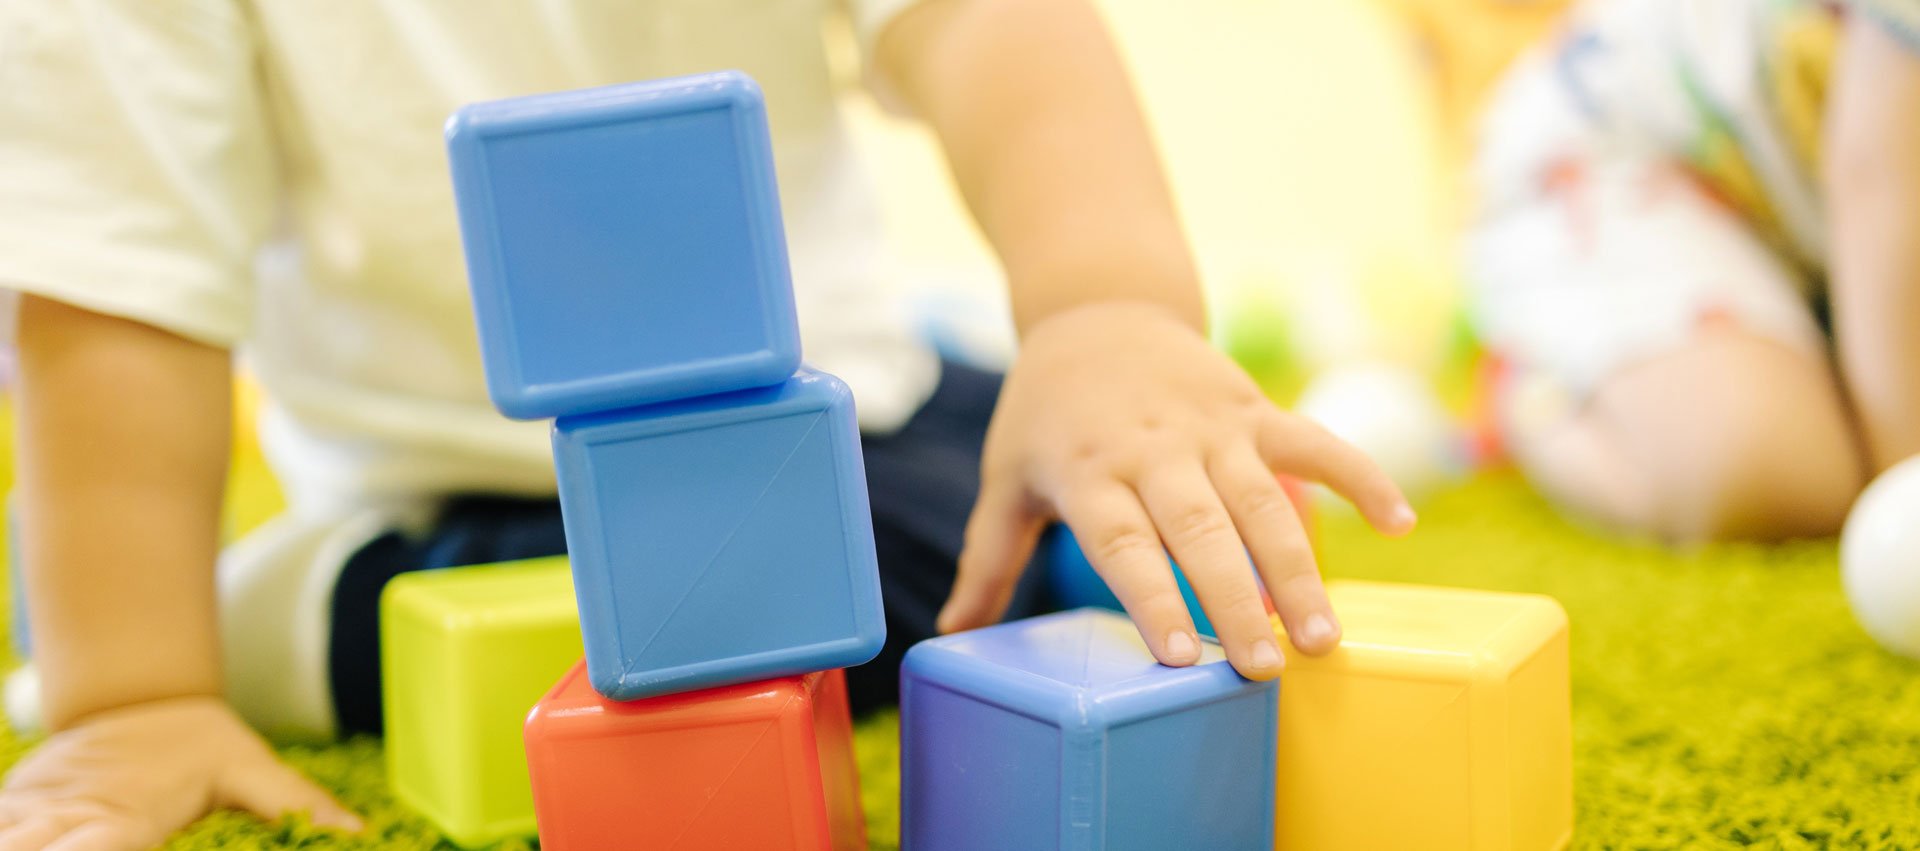 little-boy-builds-tower-cubes-kindergarten